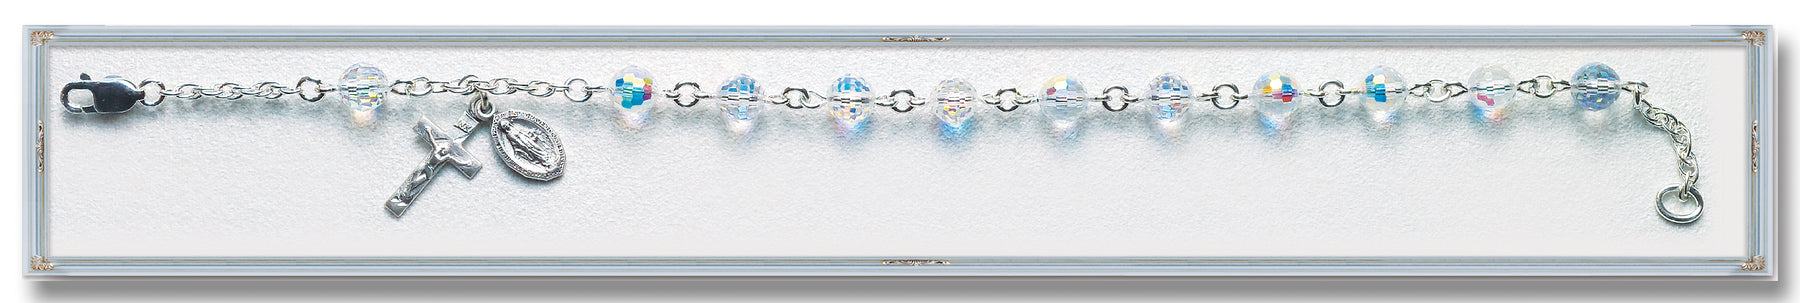 Aurora Multi Faceted Swarovski Crystal Sterling Bracelet